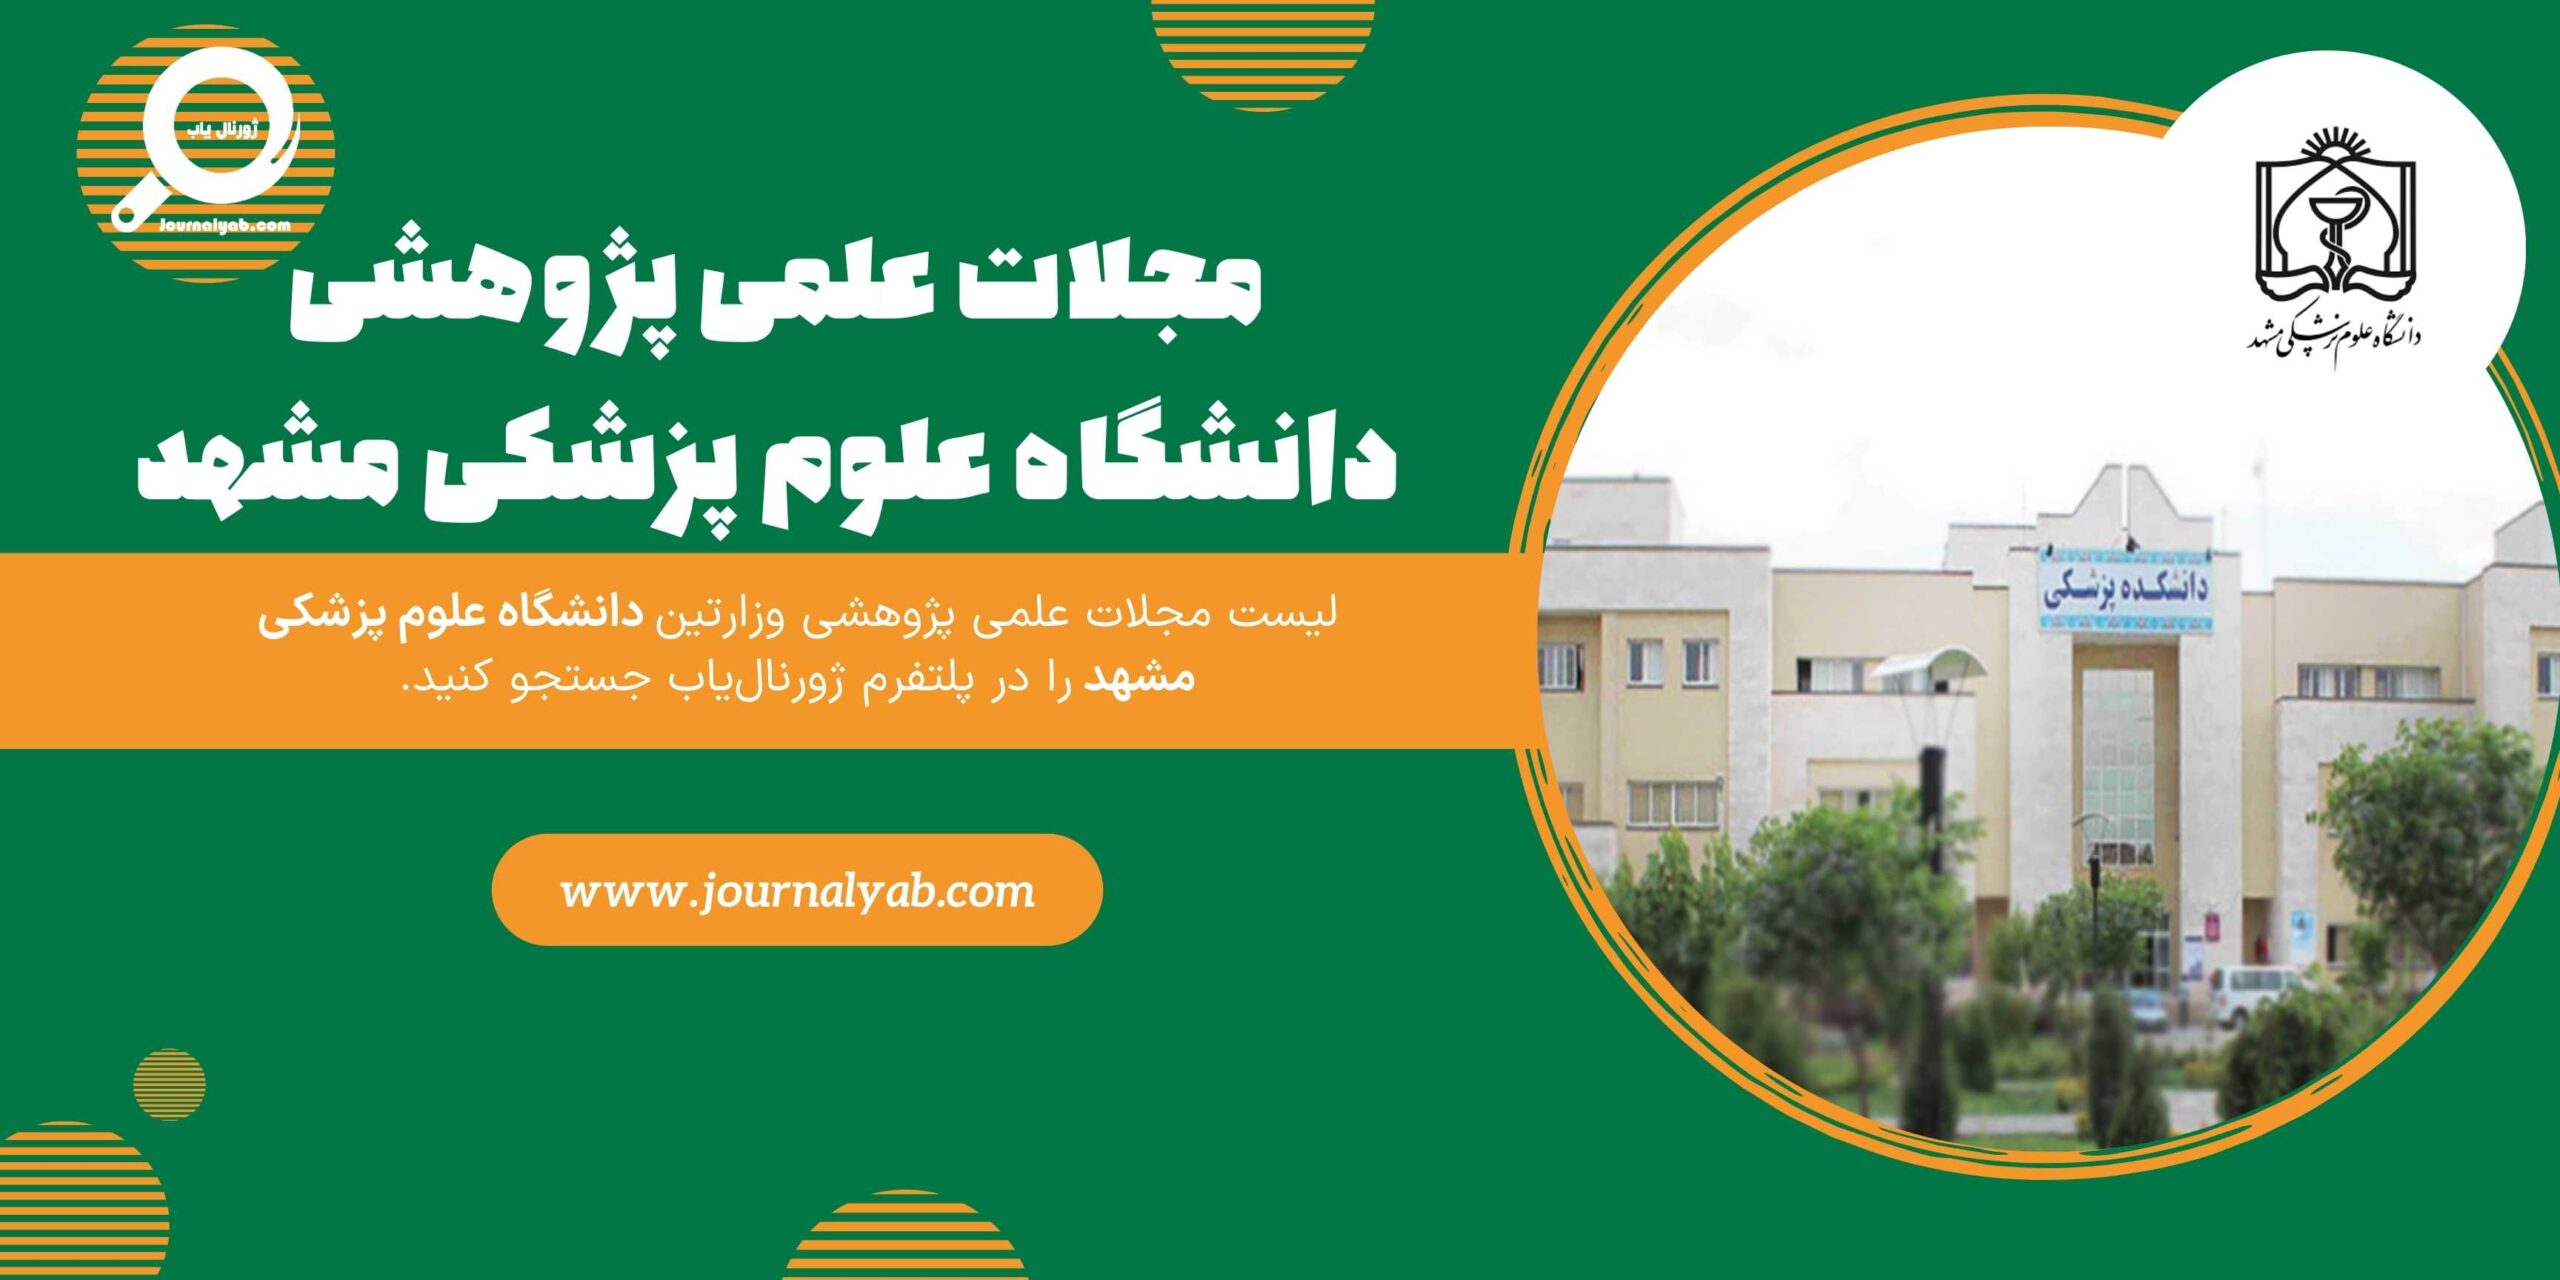 لیست مجلات دانشگاه علوم پزشکی مشهد